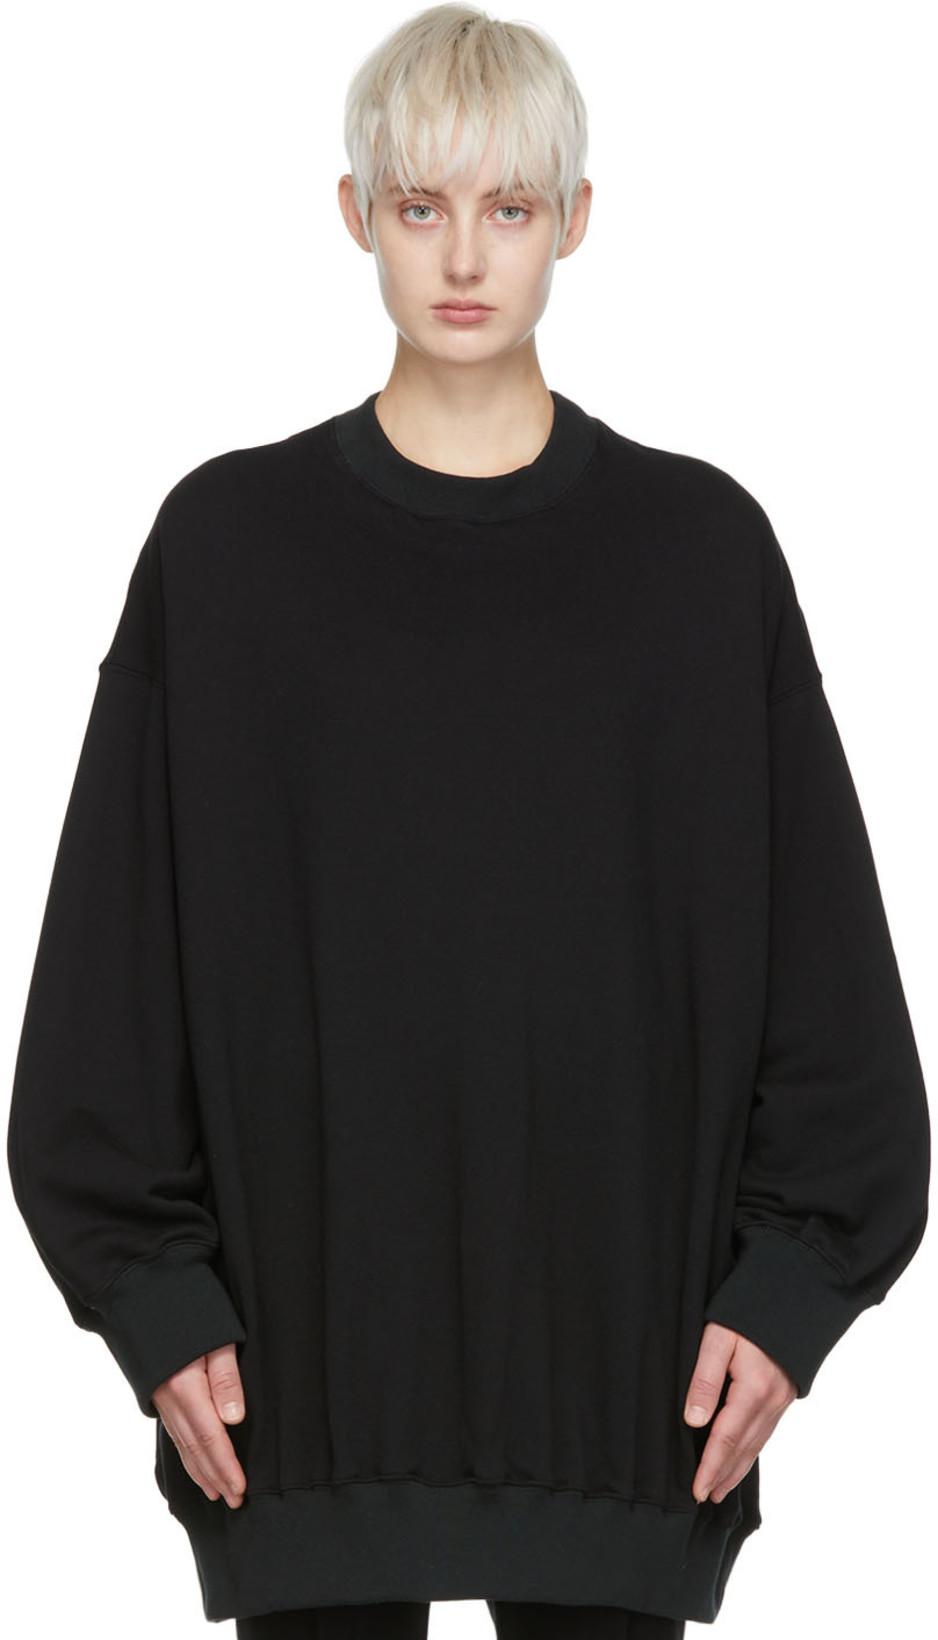 Black Cotton Sweatshirt by DETERM;